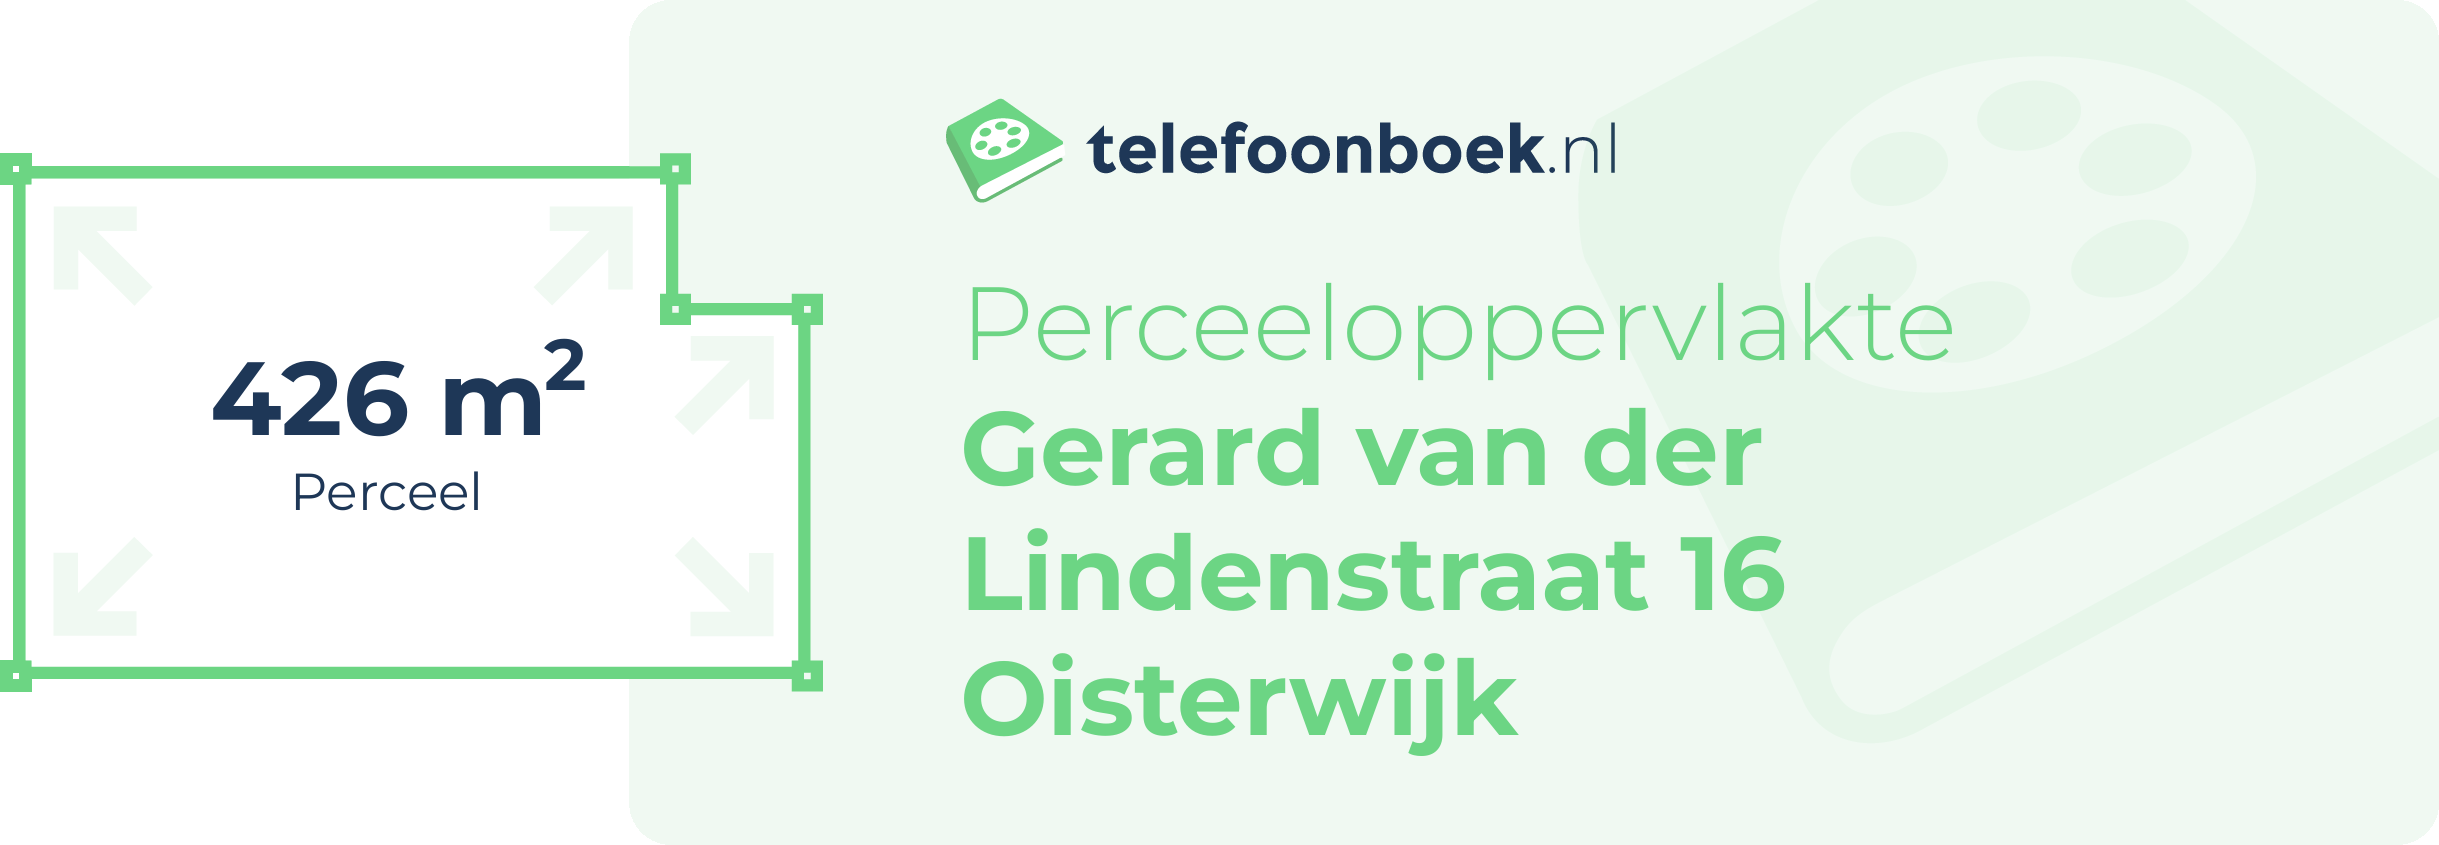 Perceeloppervlakte Gerard Van Der Lindenstraat 16 Oisterwijk